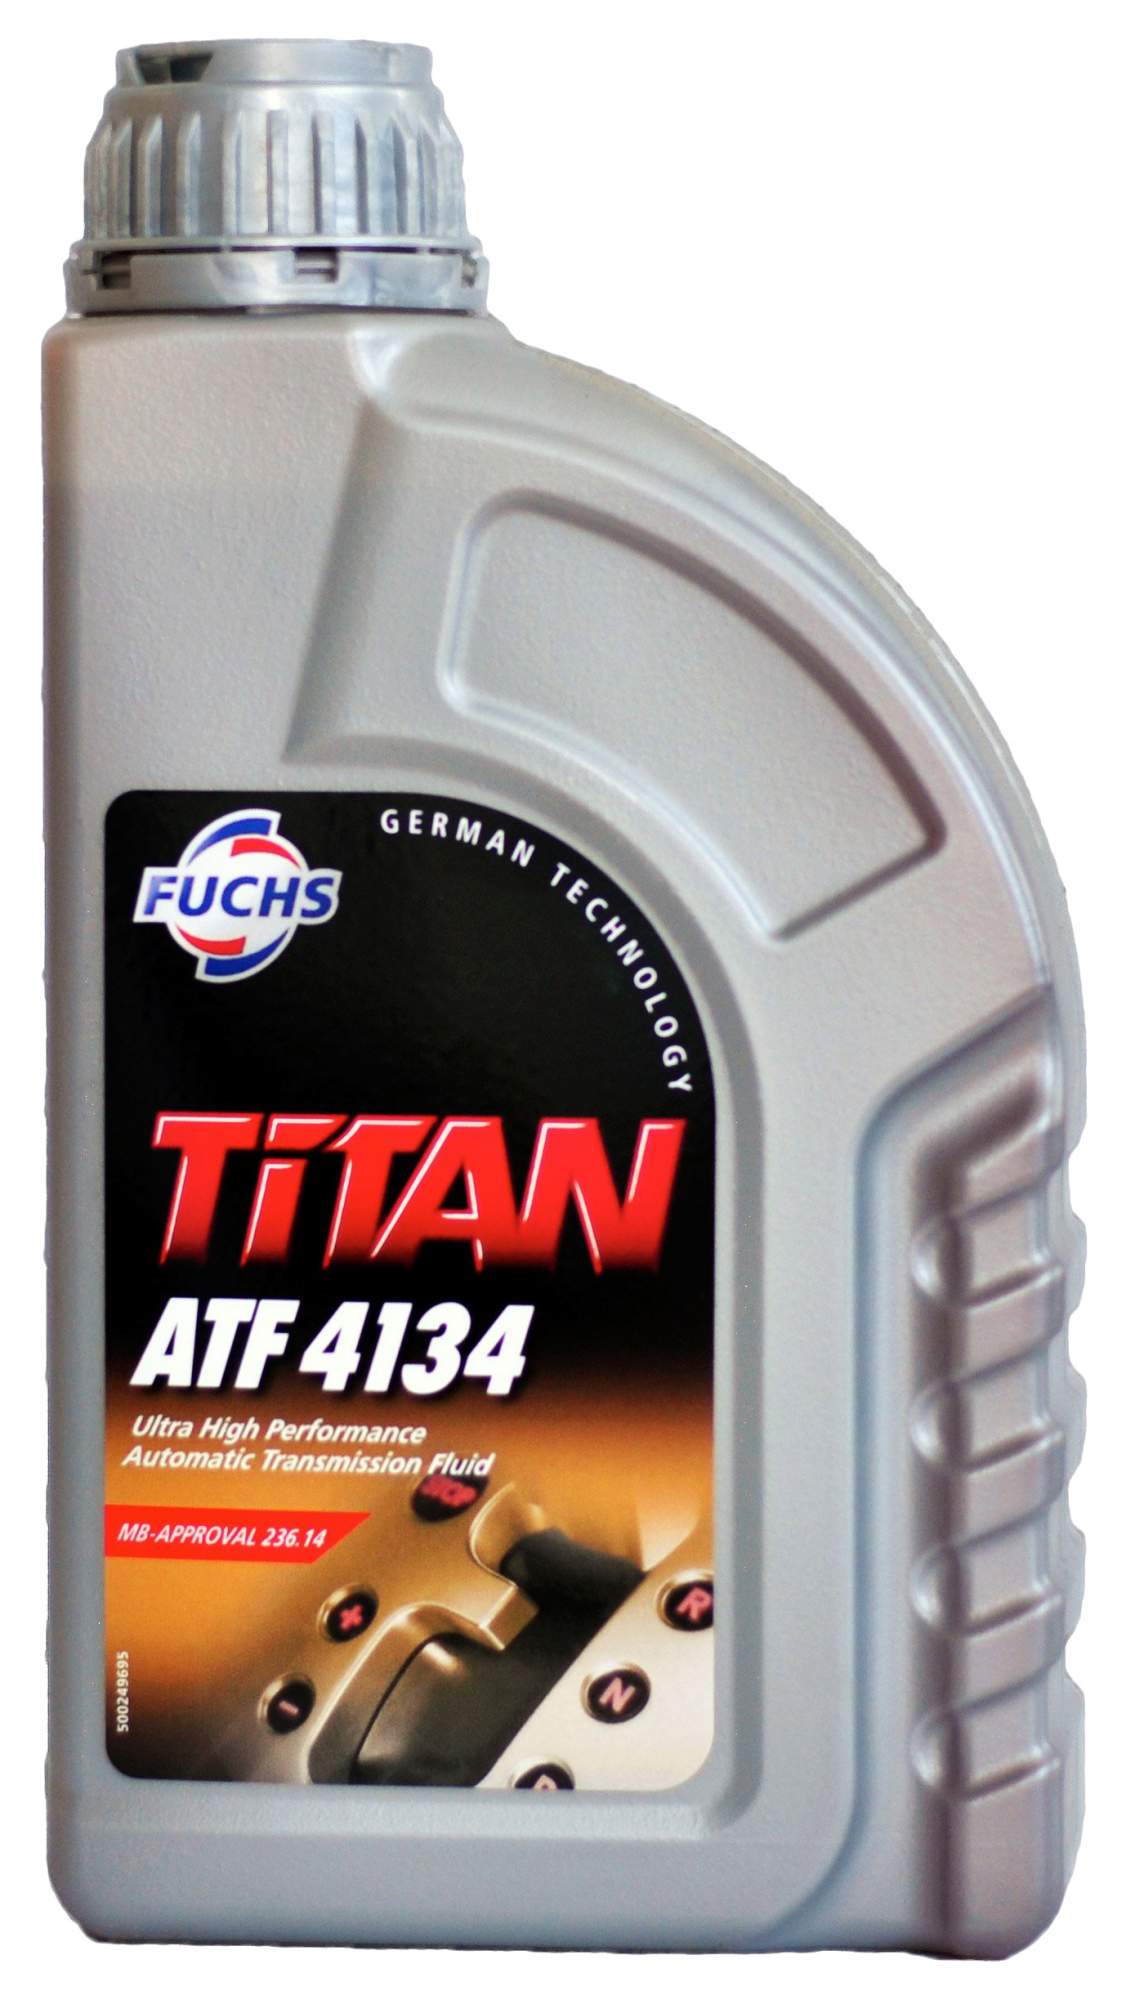 Масло трансмиссионное TITAN ATF 4134  MB 236.14